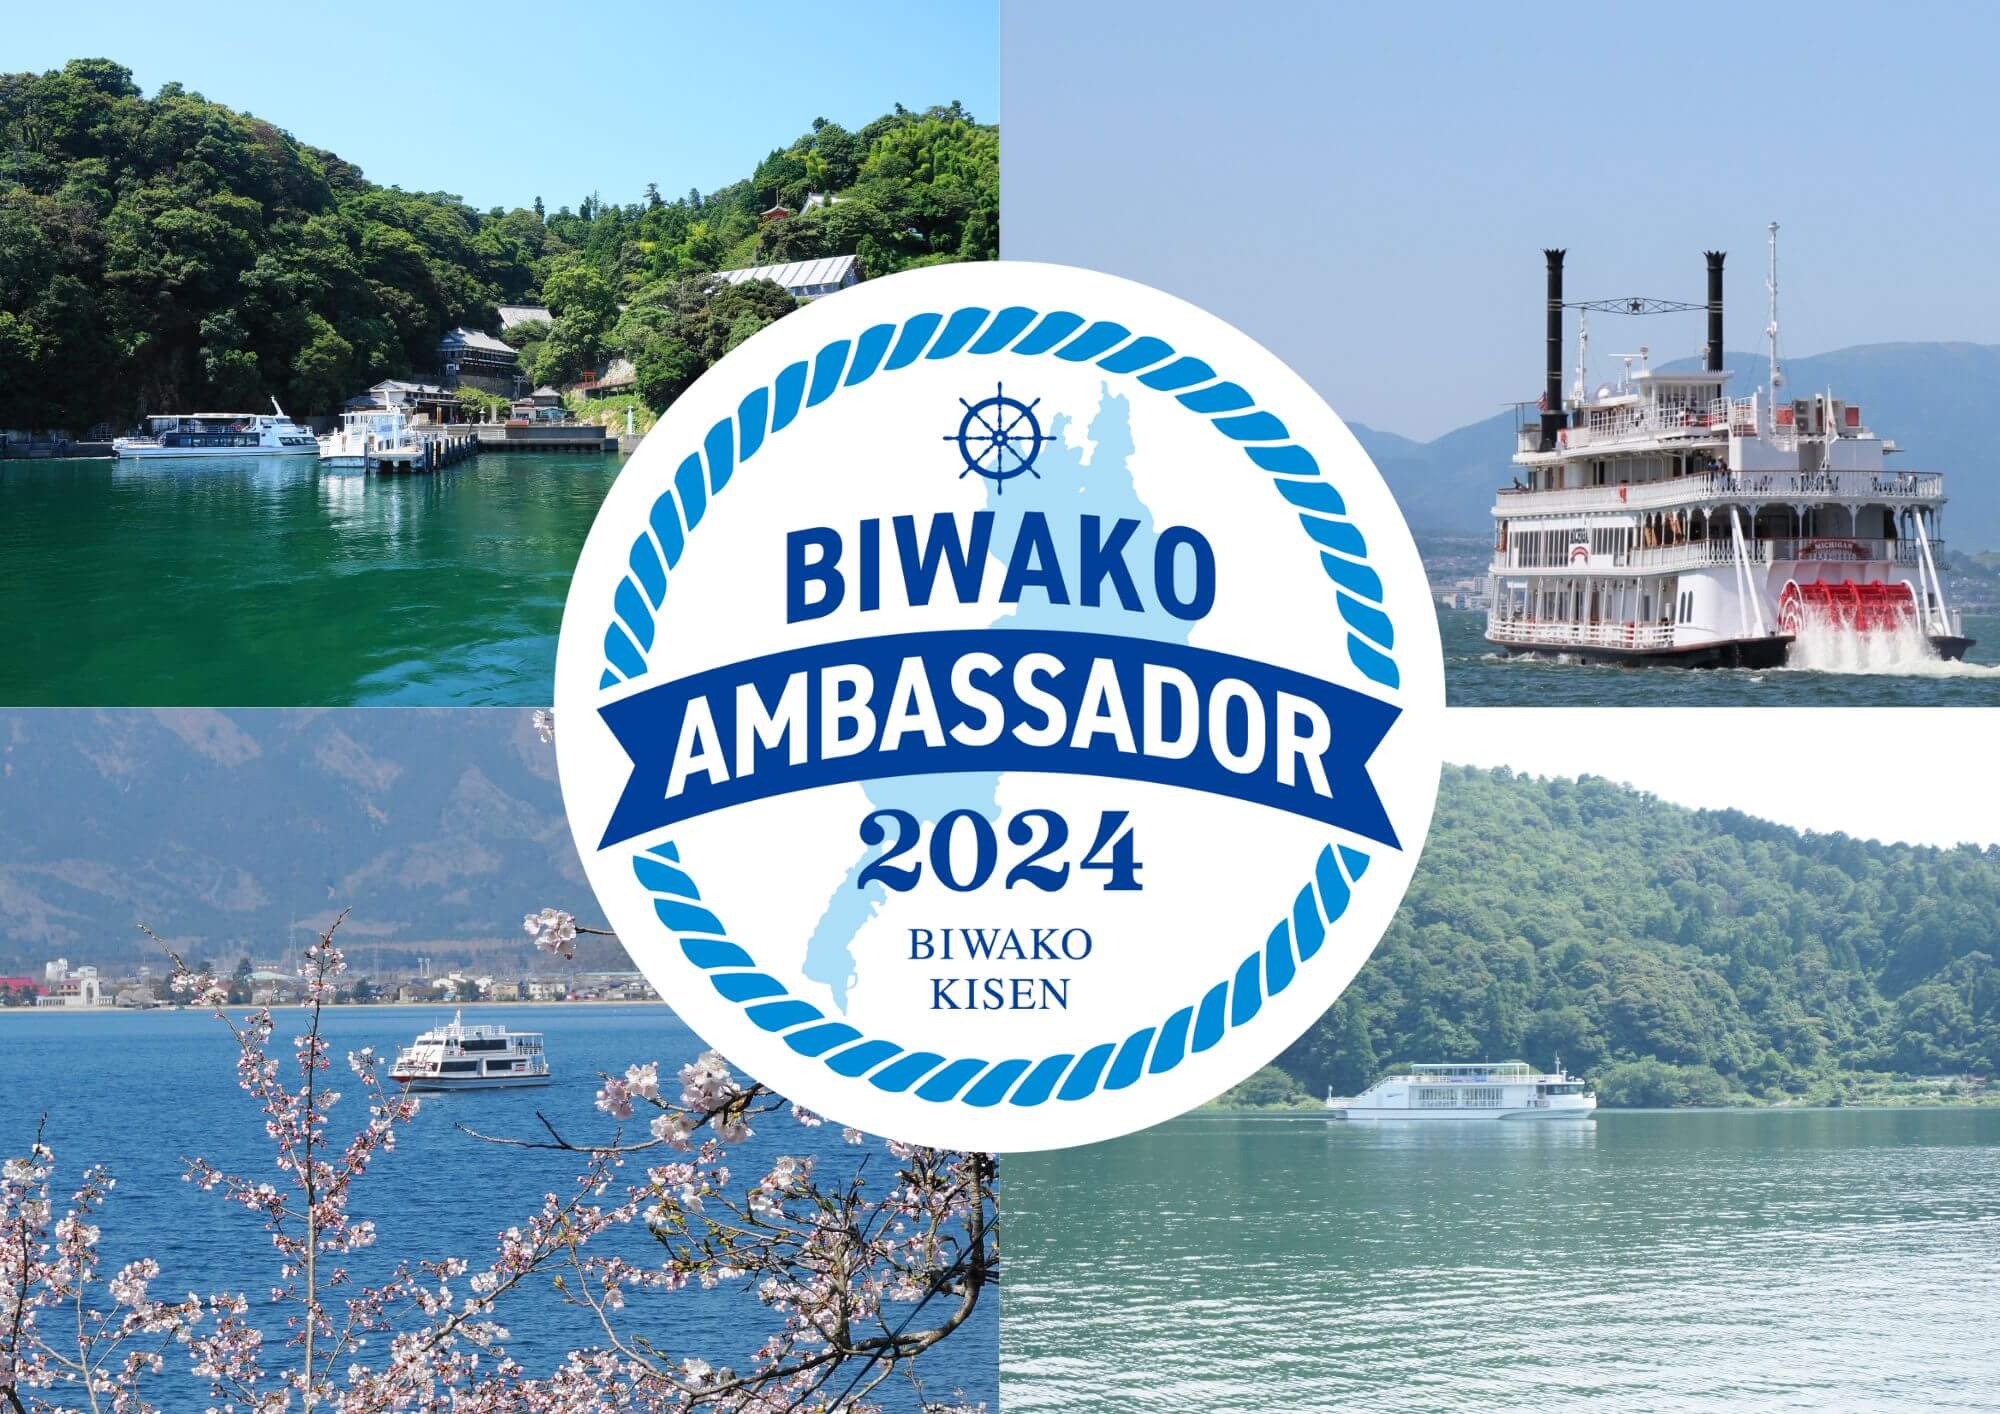 琵琶湖汽船公式「びわ湖アンバサダー」3 期生』の募集を開始いたします 